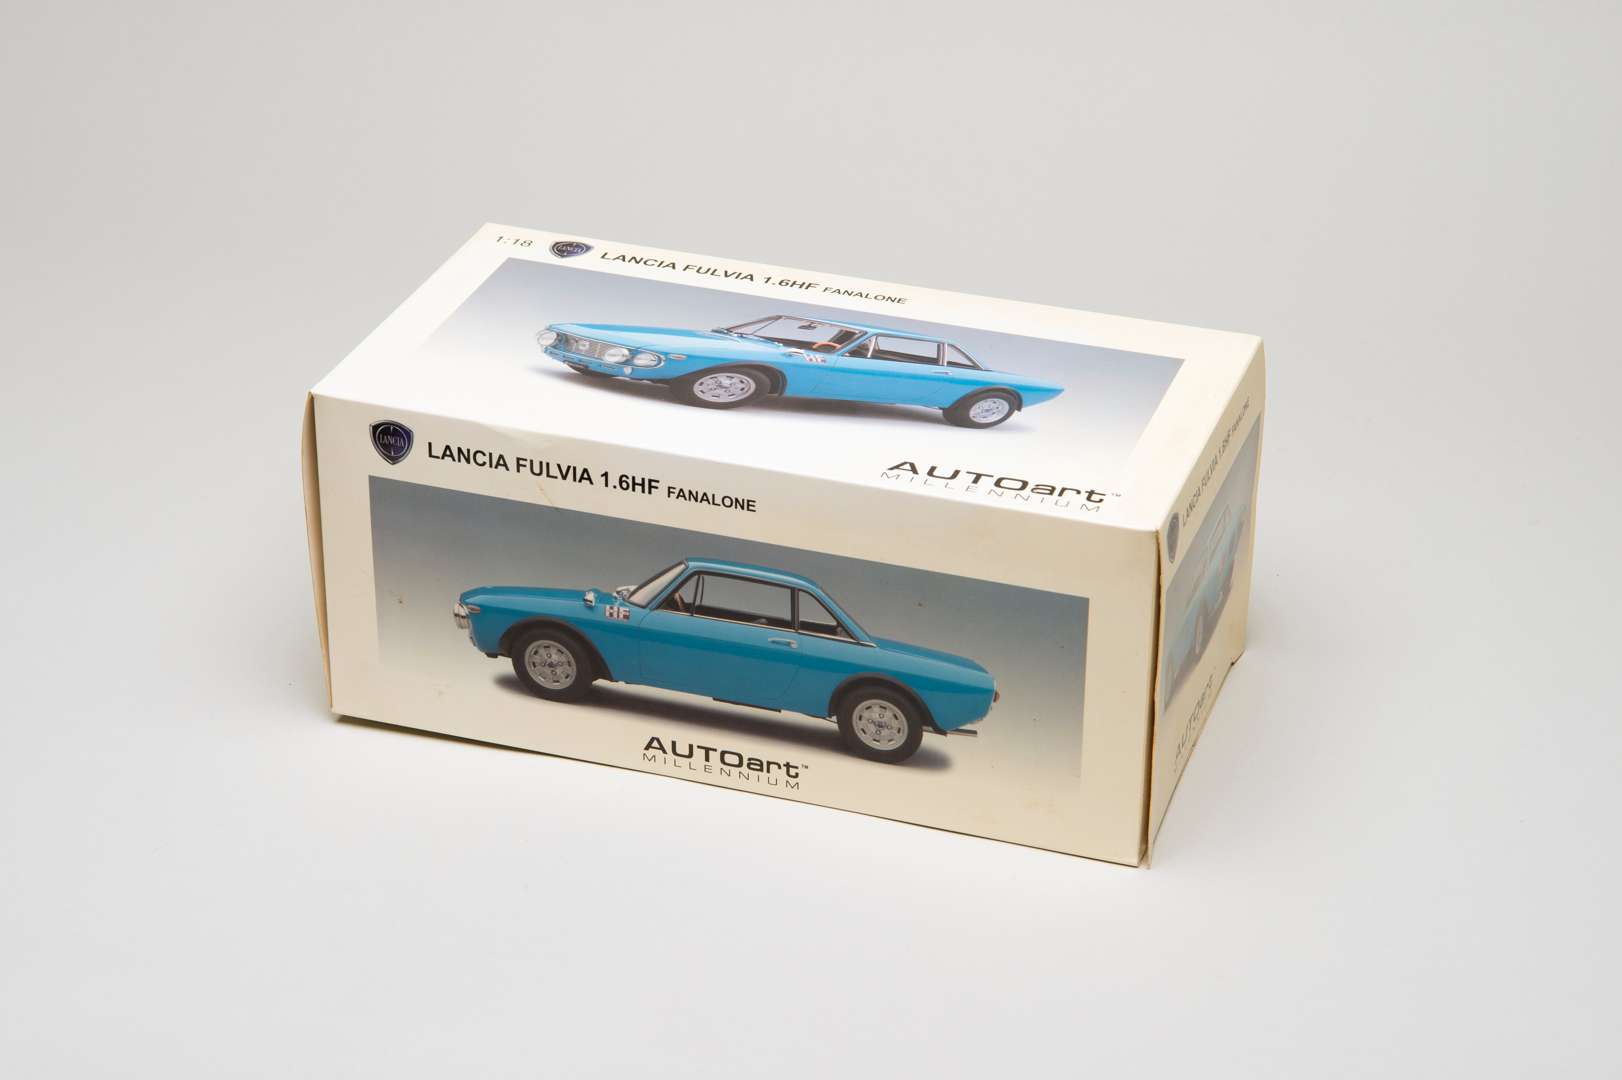 <blockquote><p>AUTOART MILLENIUM, Lancia, 1965, Fulvia, 1.6HF, Fanalone</p></blockquote>